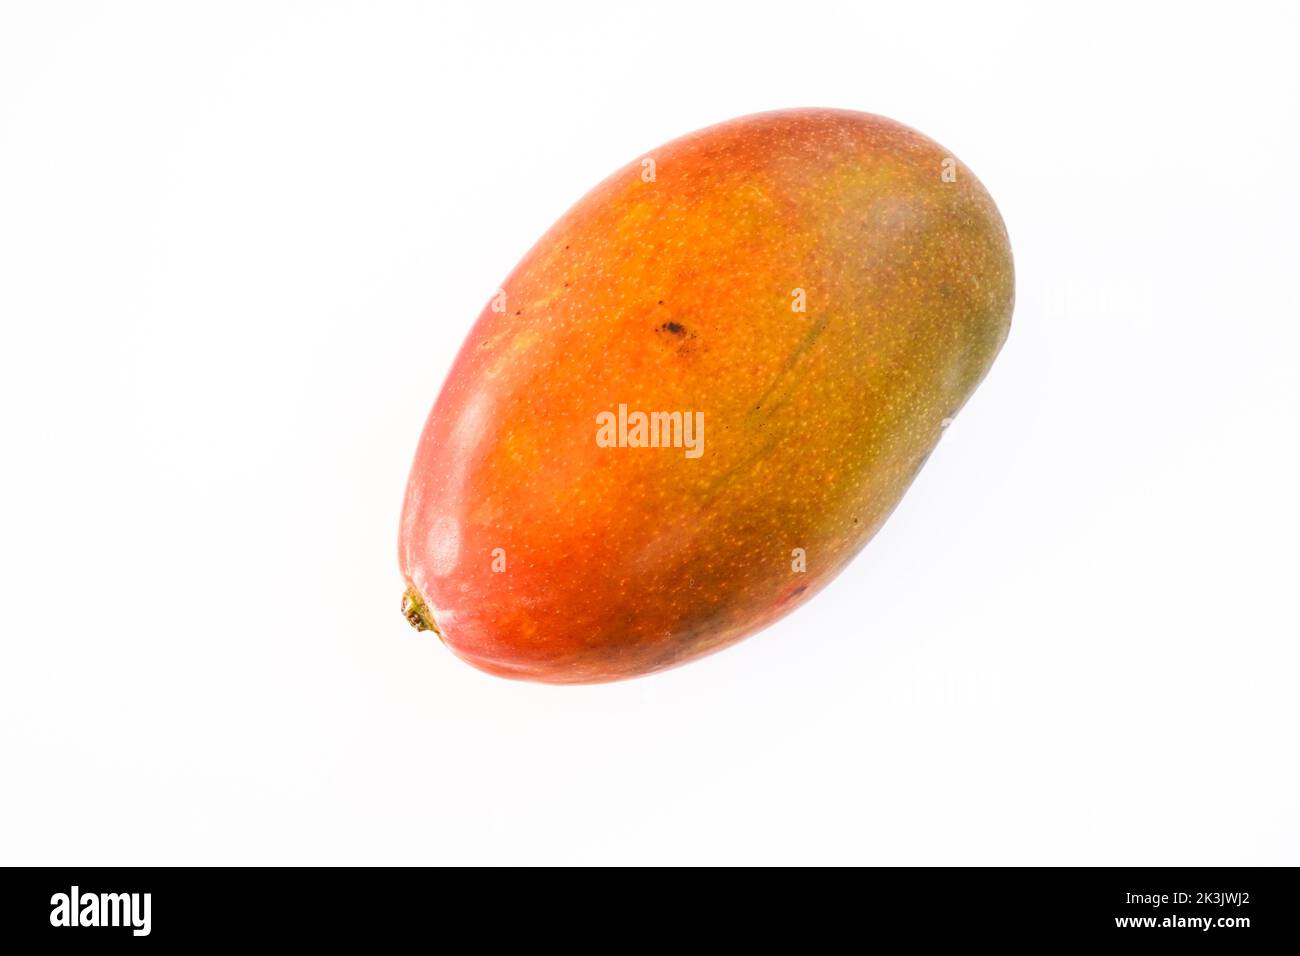 Mango fruit on white background Stock Photo